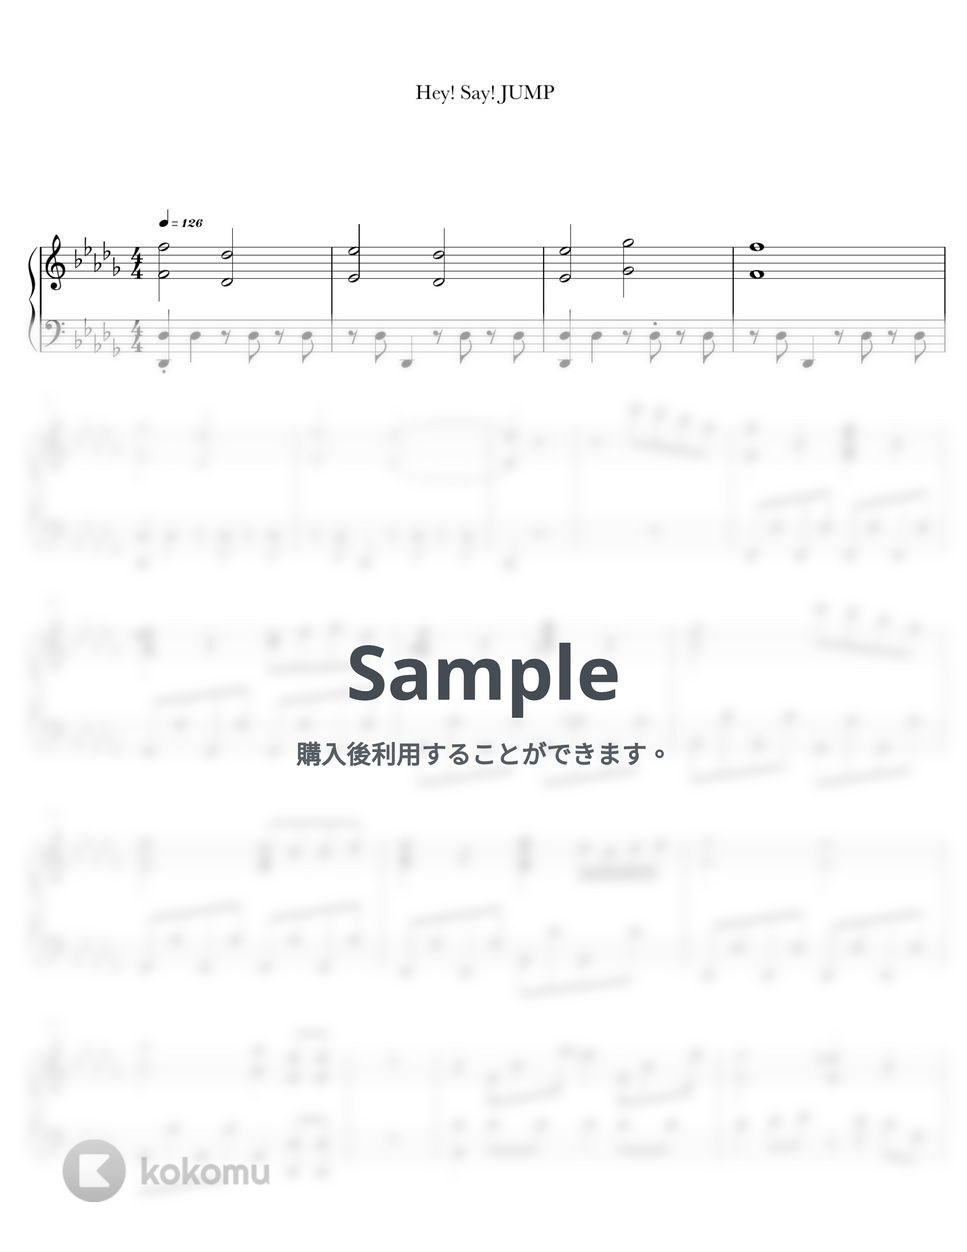 Hey! Say! JUMP - パレードが始まる (ピアノ / 弾き語り / ソロ / ジャニーズ / J-POP / Hey! Say! JUMP / 平成ジャンプ) by anytimepiano